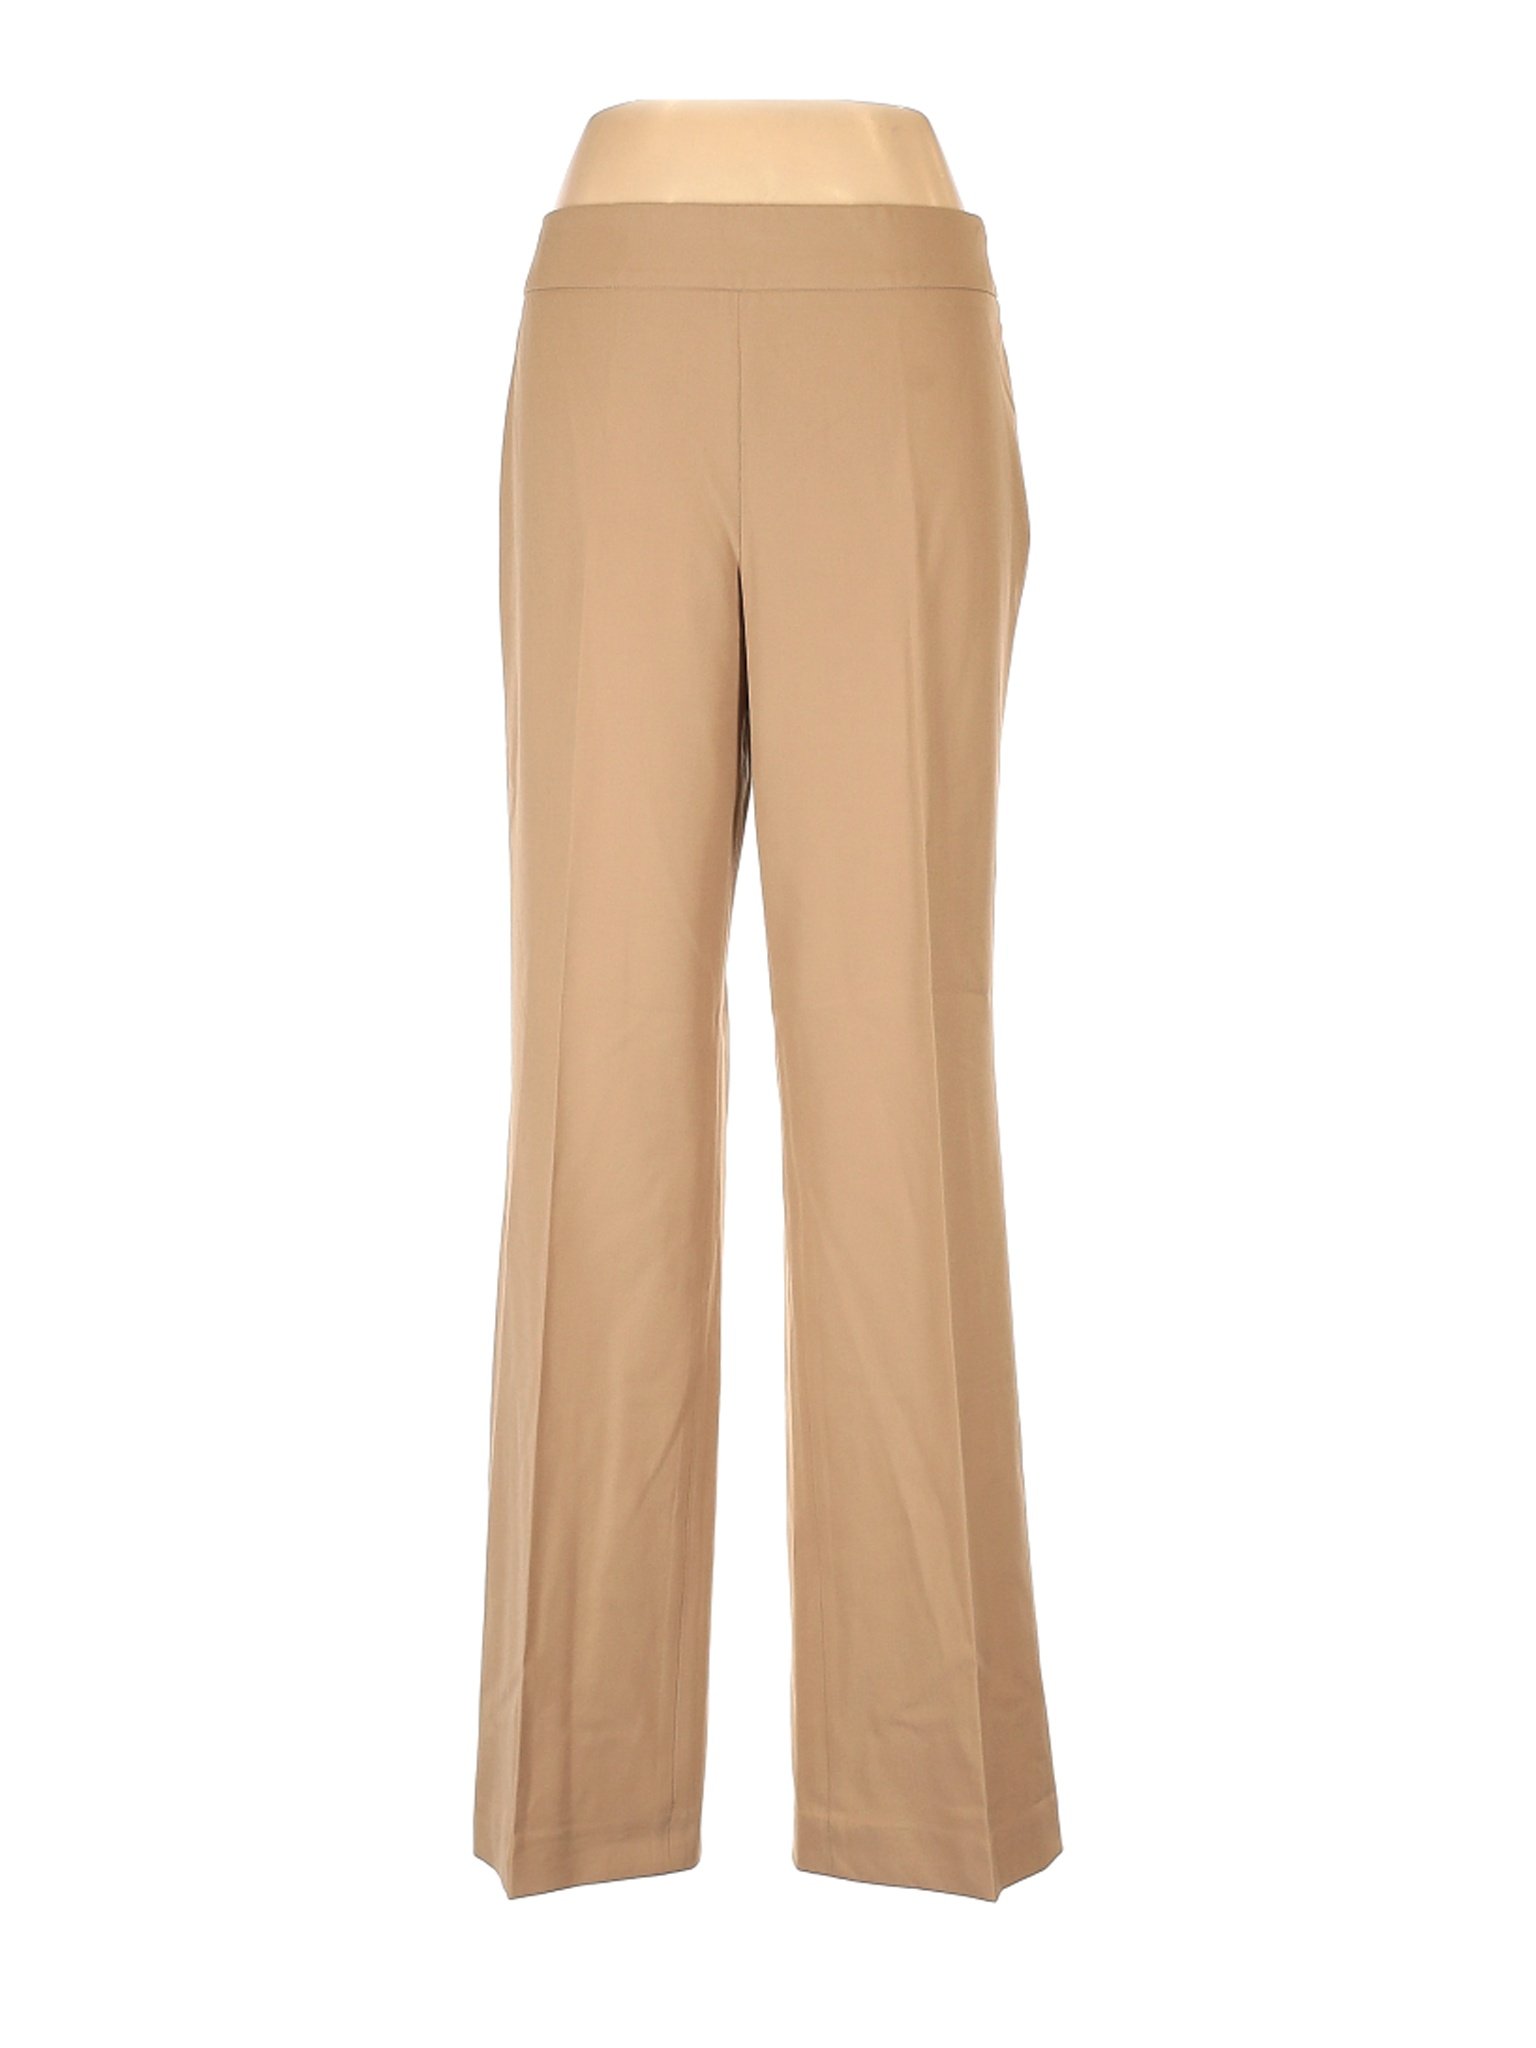 Talbots Women Brown Dress Pants 12 | eBay